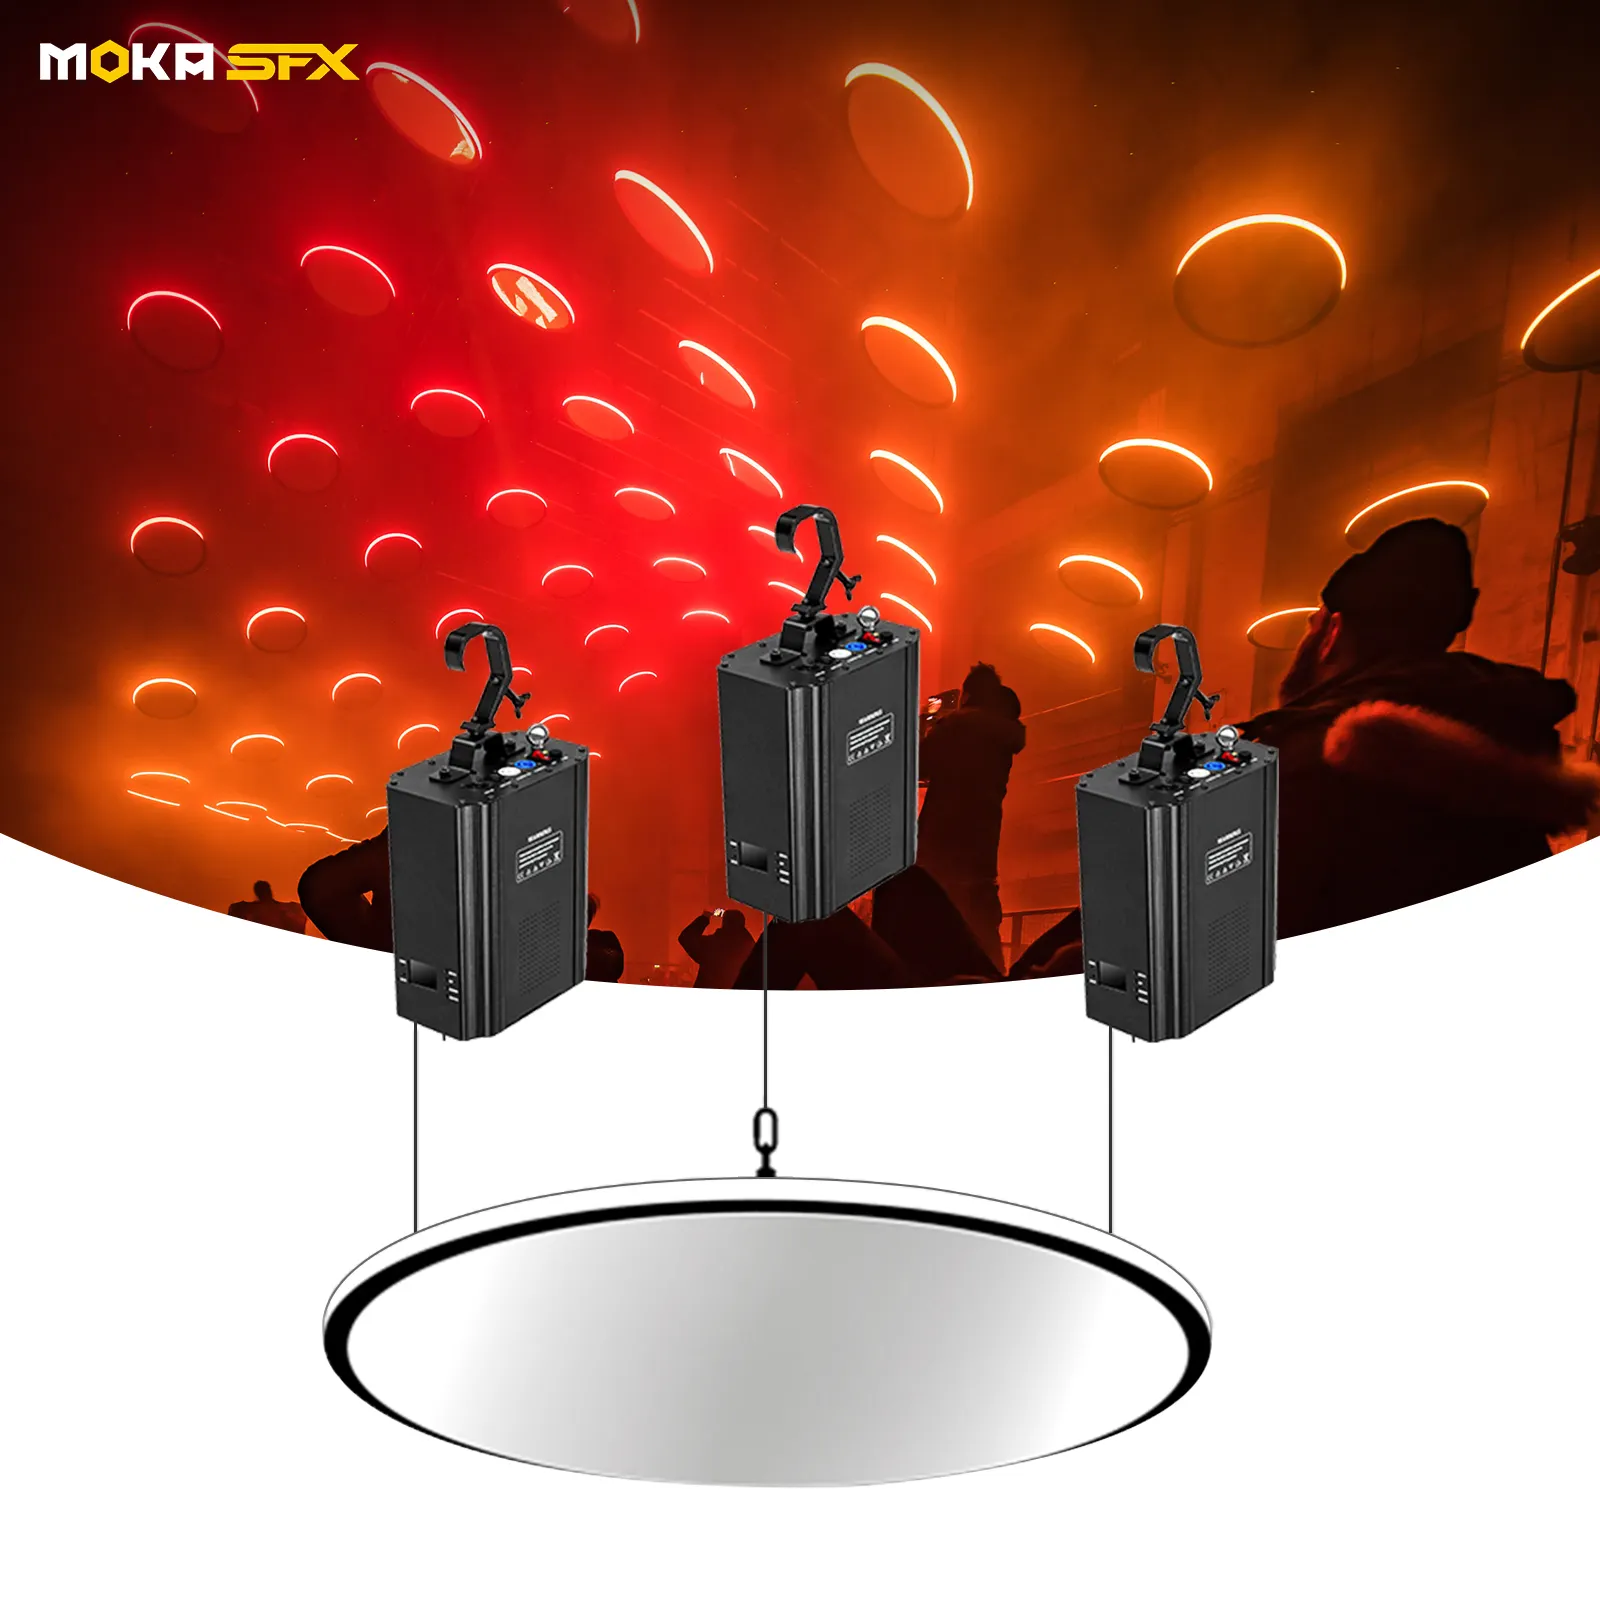 Moka sfx özelleştirilmiş Rgb 3In1 kinetik piksel halka ışık Dmx vinç Led kinetik sanat aydınlatma sistemi